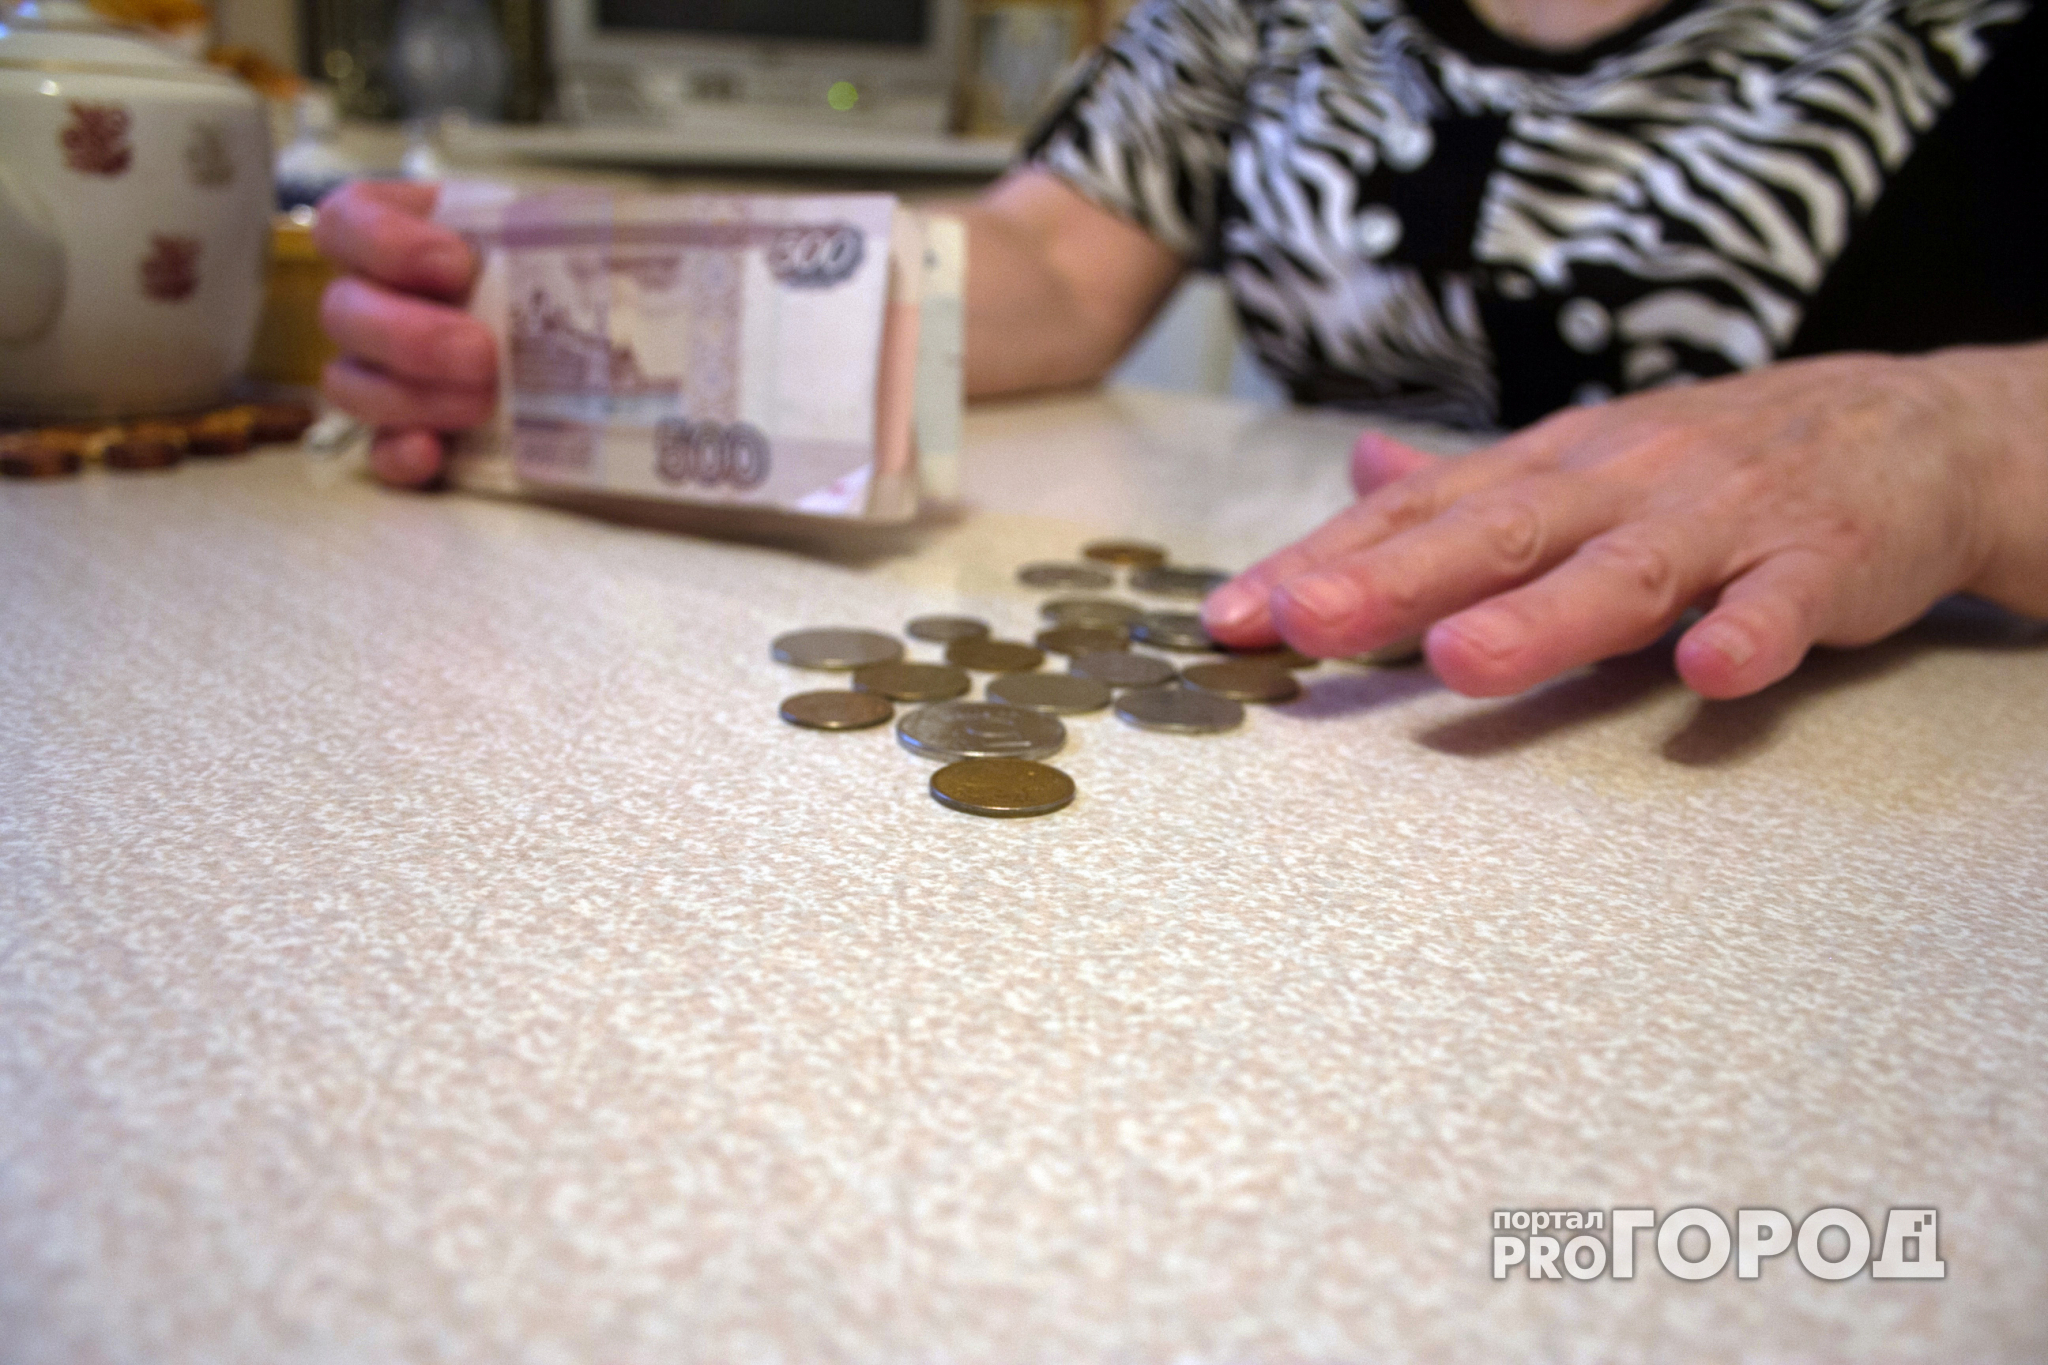 Новости России: В 2018 году ощутимо вырастут пенсионные и социальные выплаты